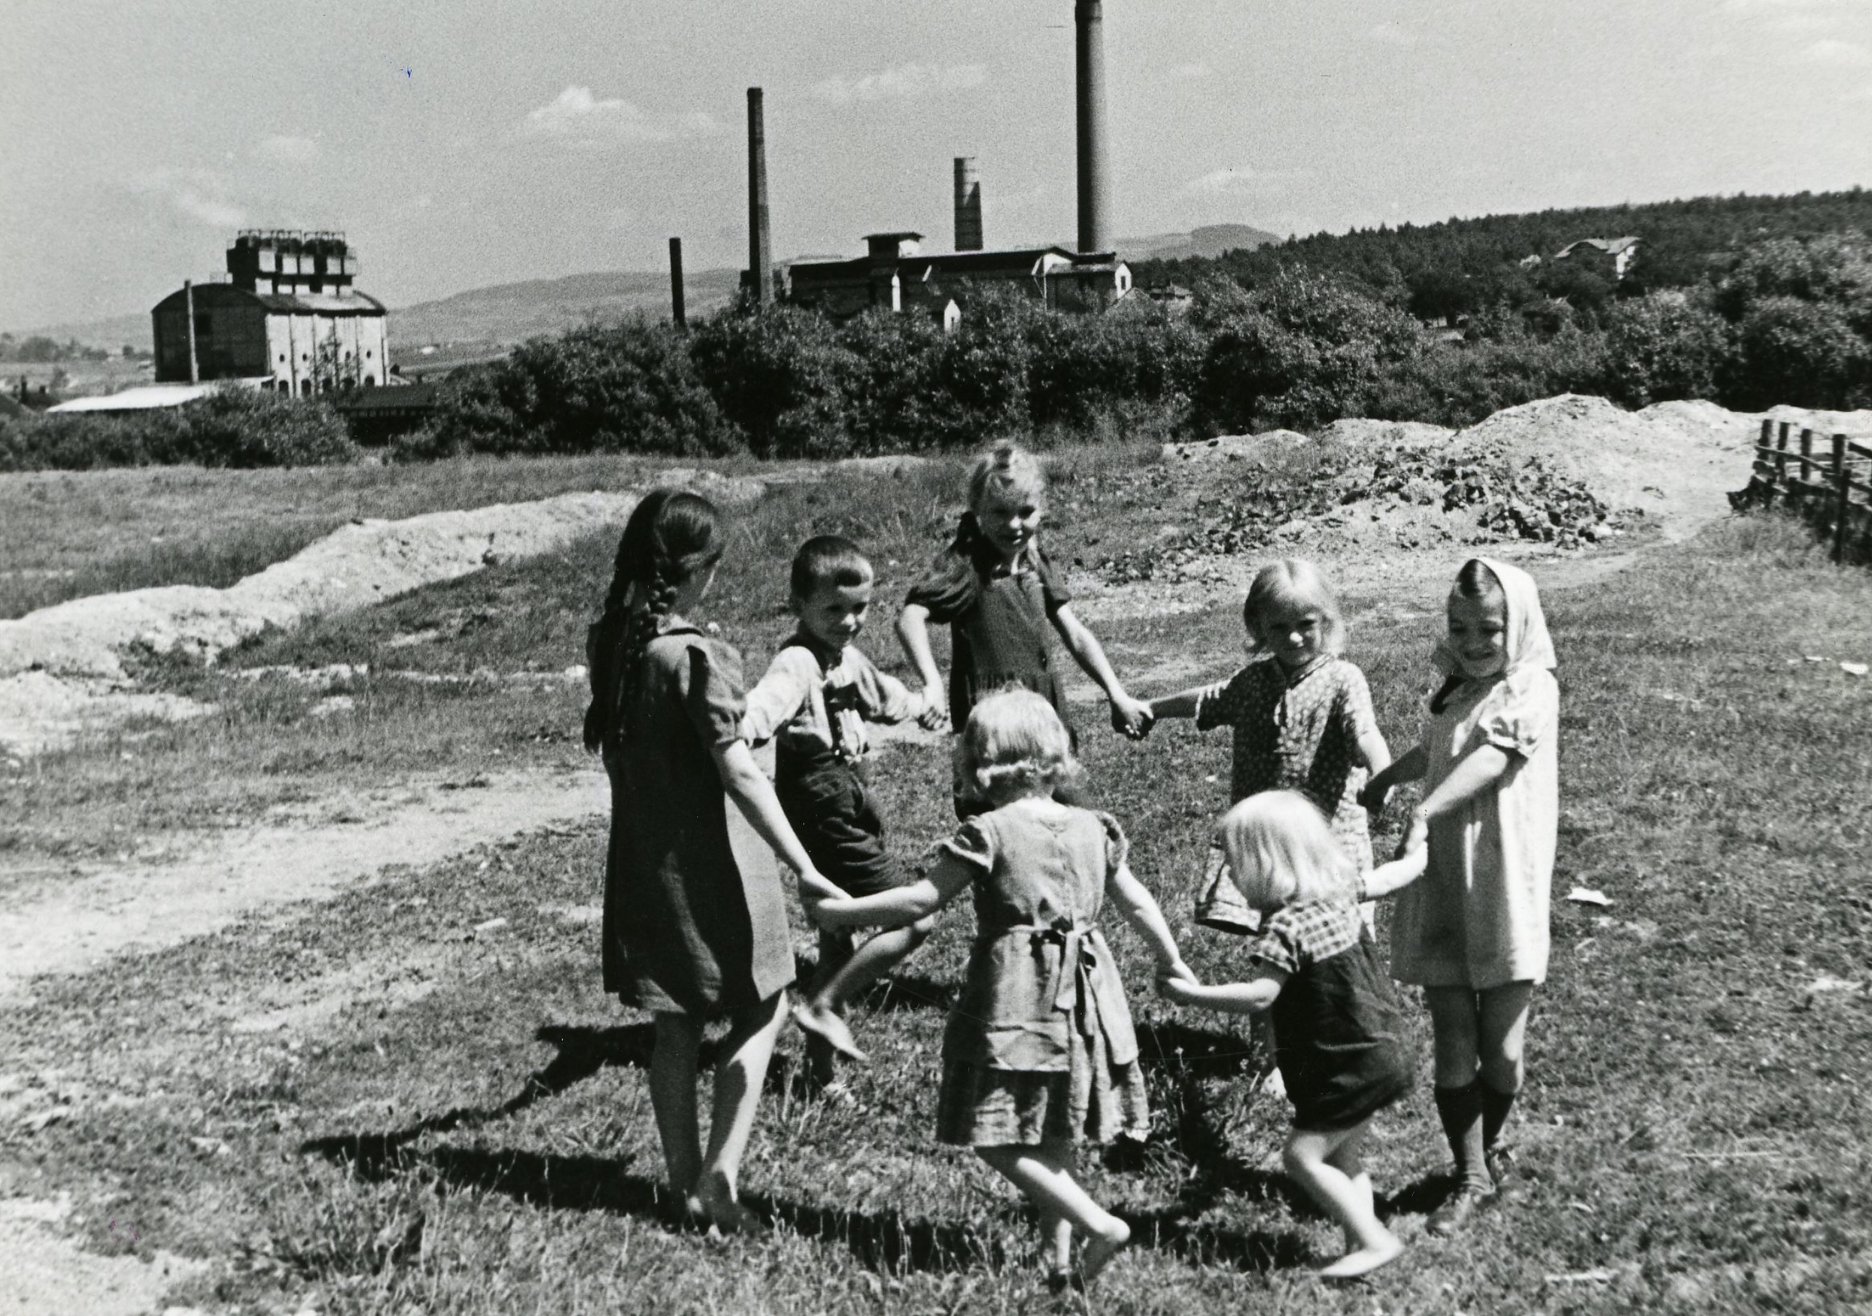 1942 Deti hrajúce sa v okolí bane Gustav v Habartove v čase druhej svetovej vojny. Baňa sa neskôr stala súčasťou lomu Medard. Zdroj: Podnikový archív Sokolovská uhelná